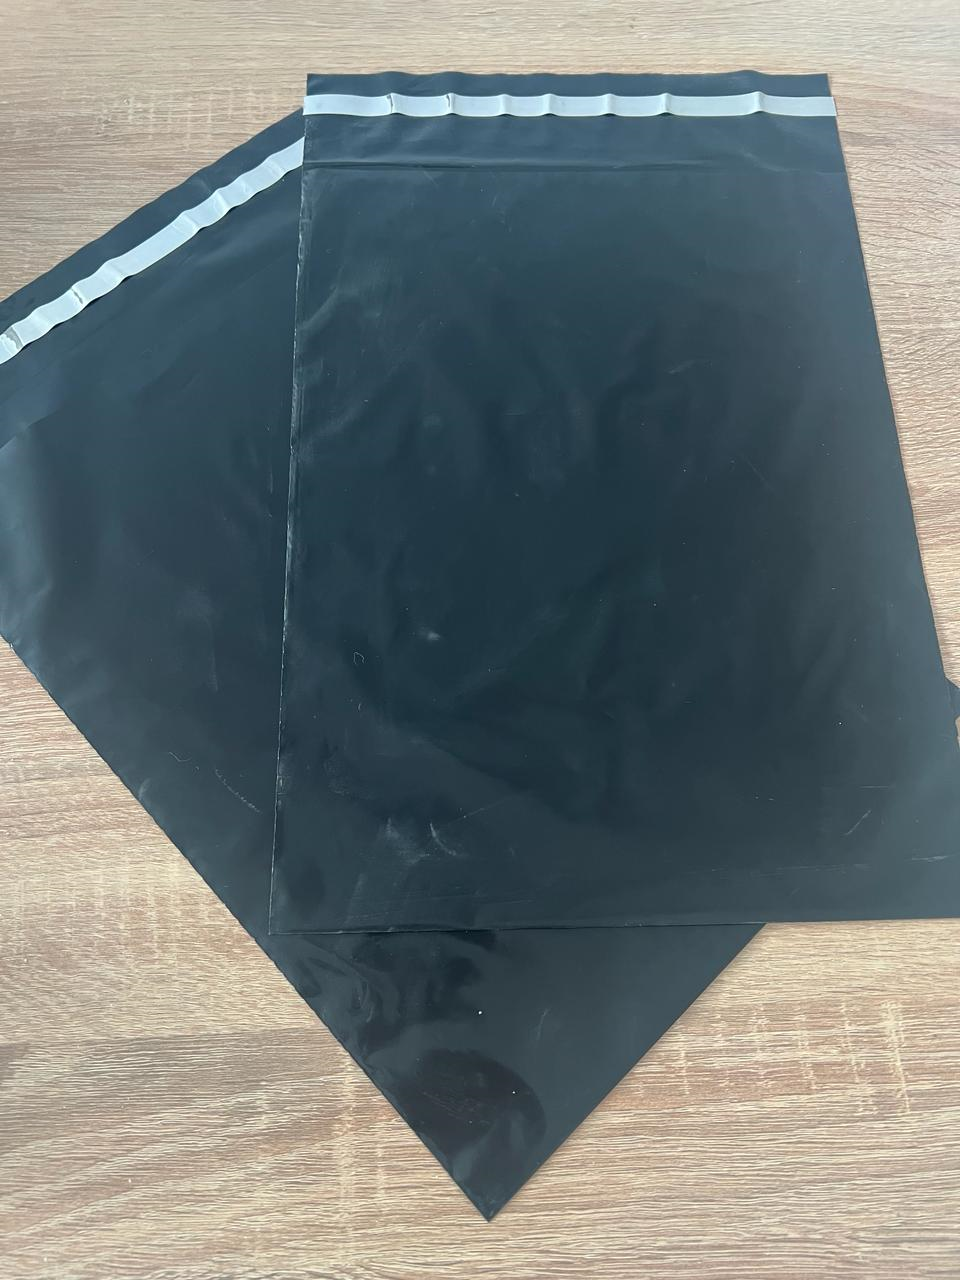 Курьер пакет черный 240*320 (упаковка 100 штук)